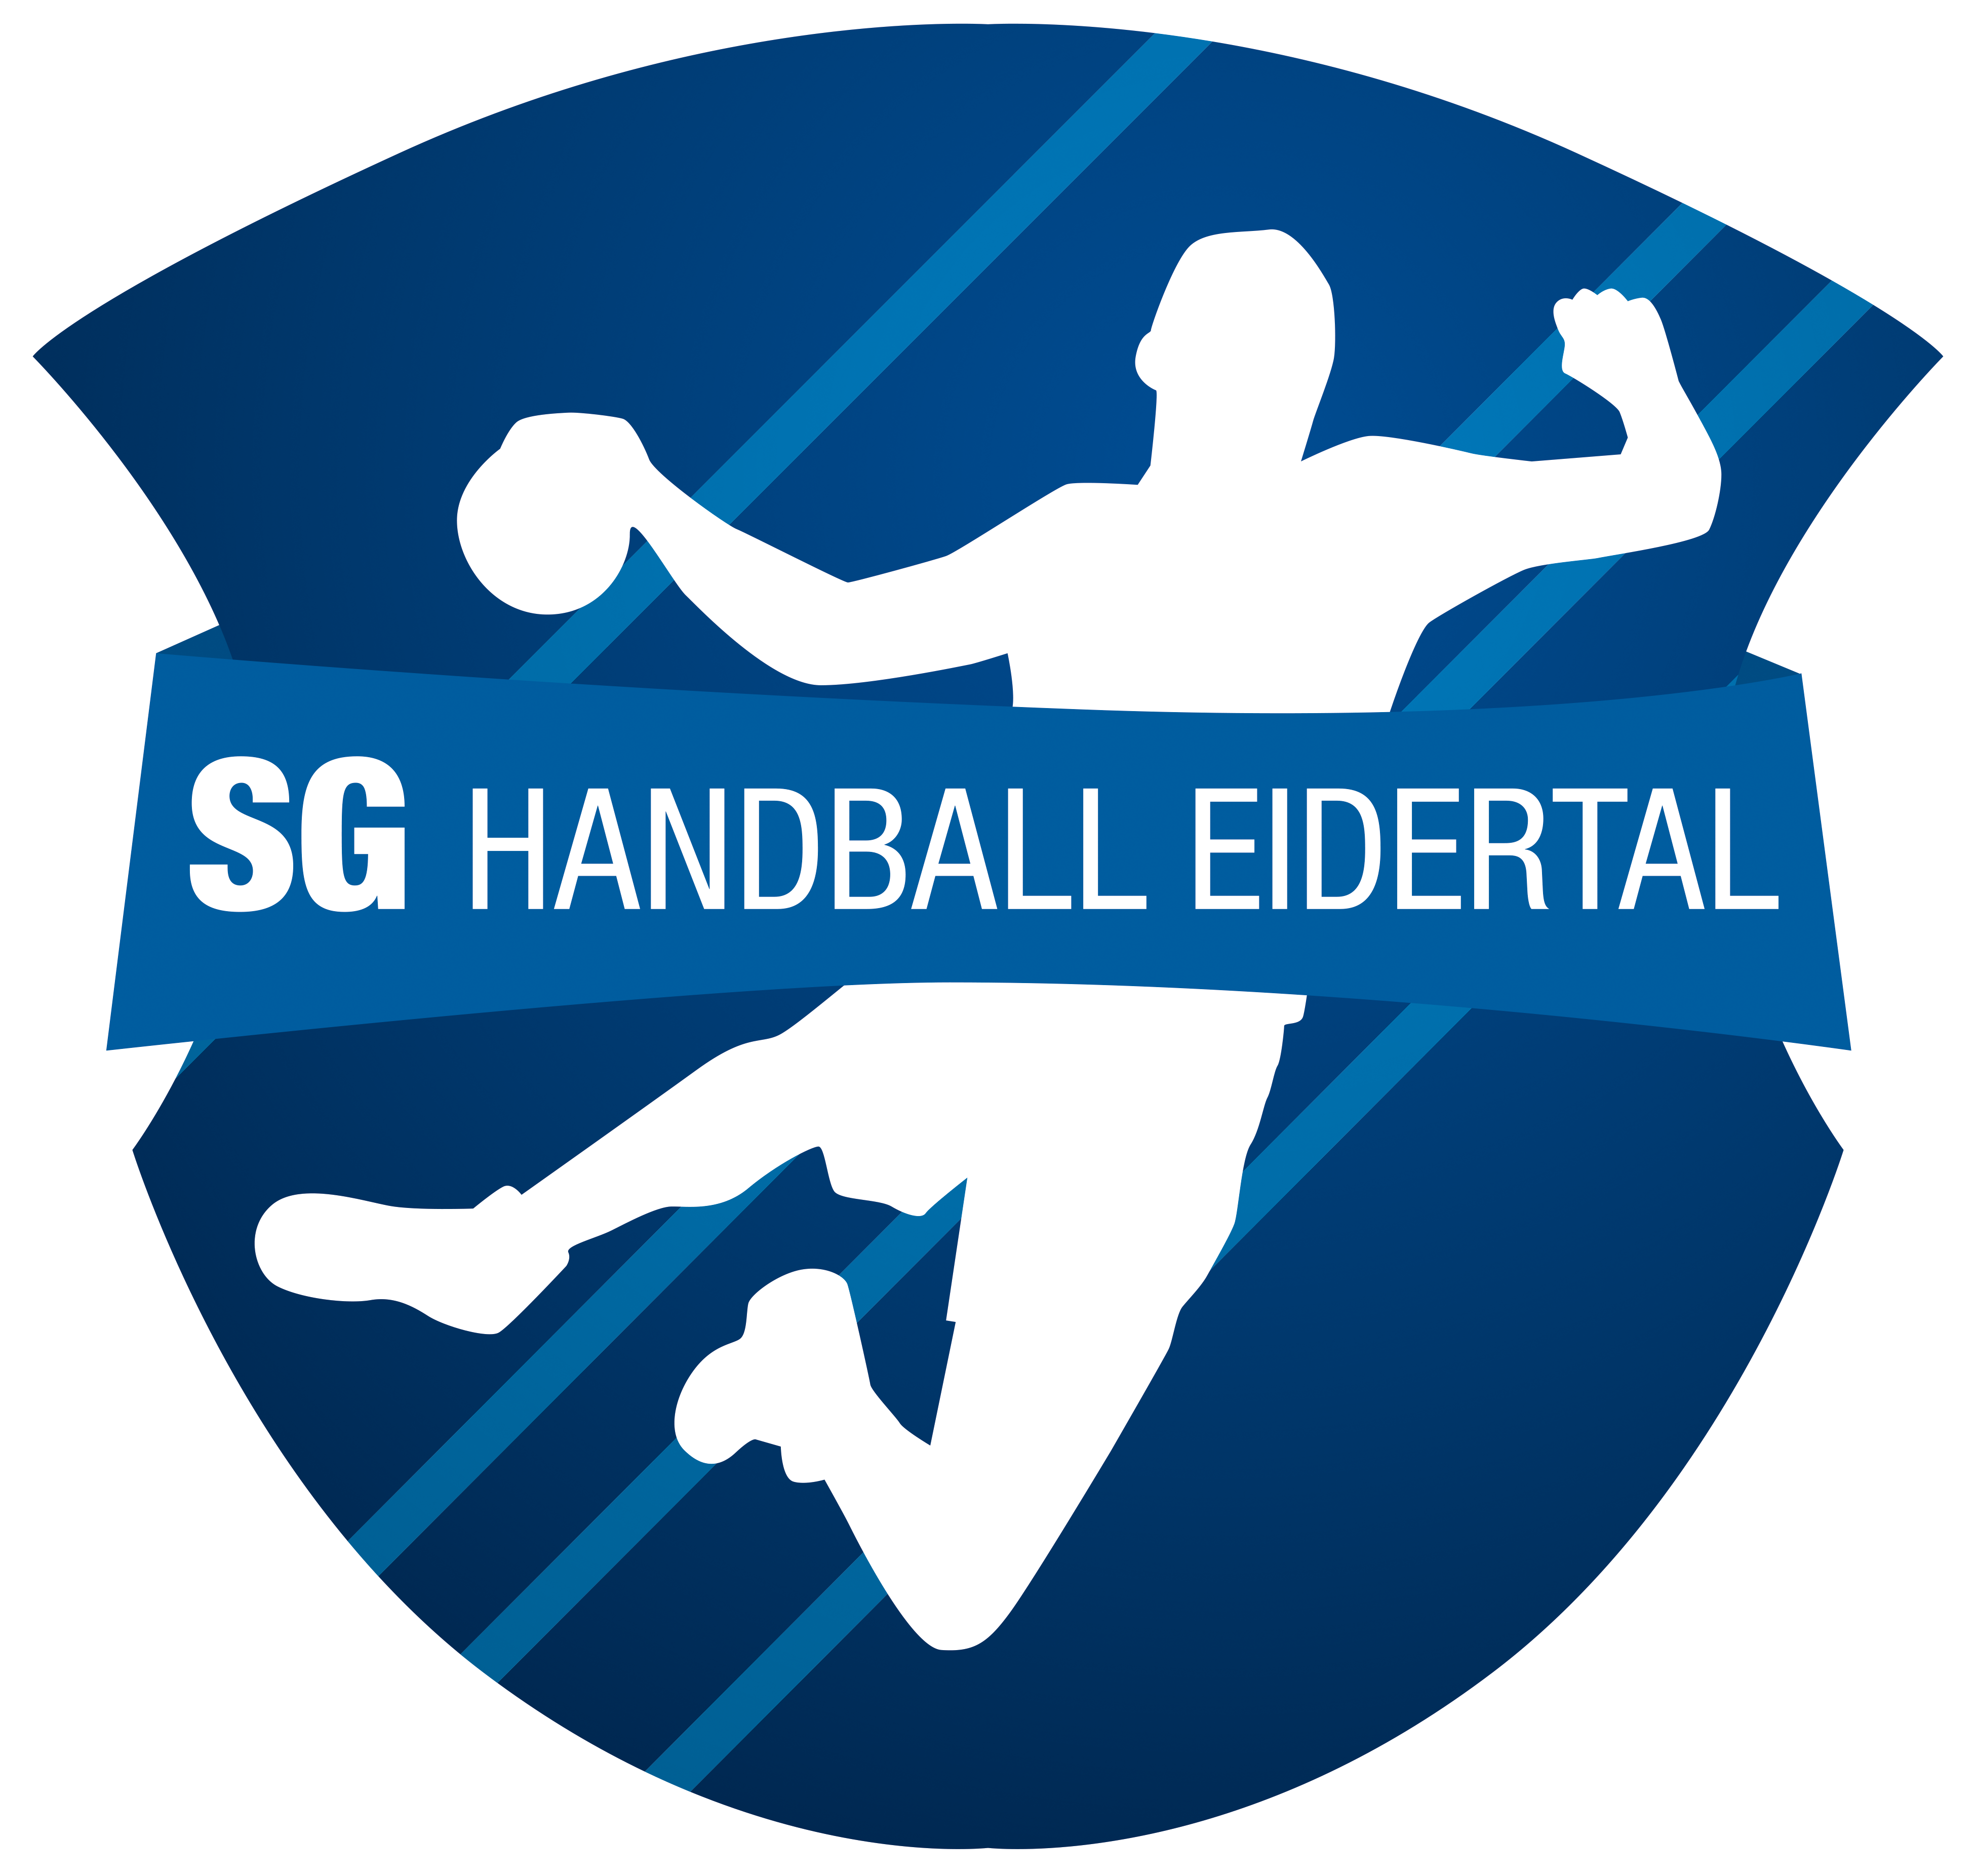 (c) Handball-eidertal.de